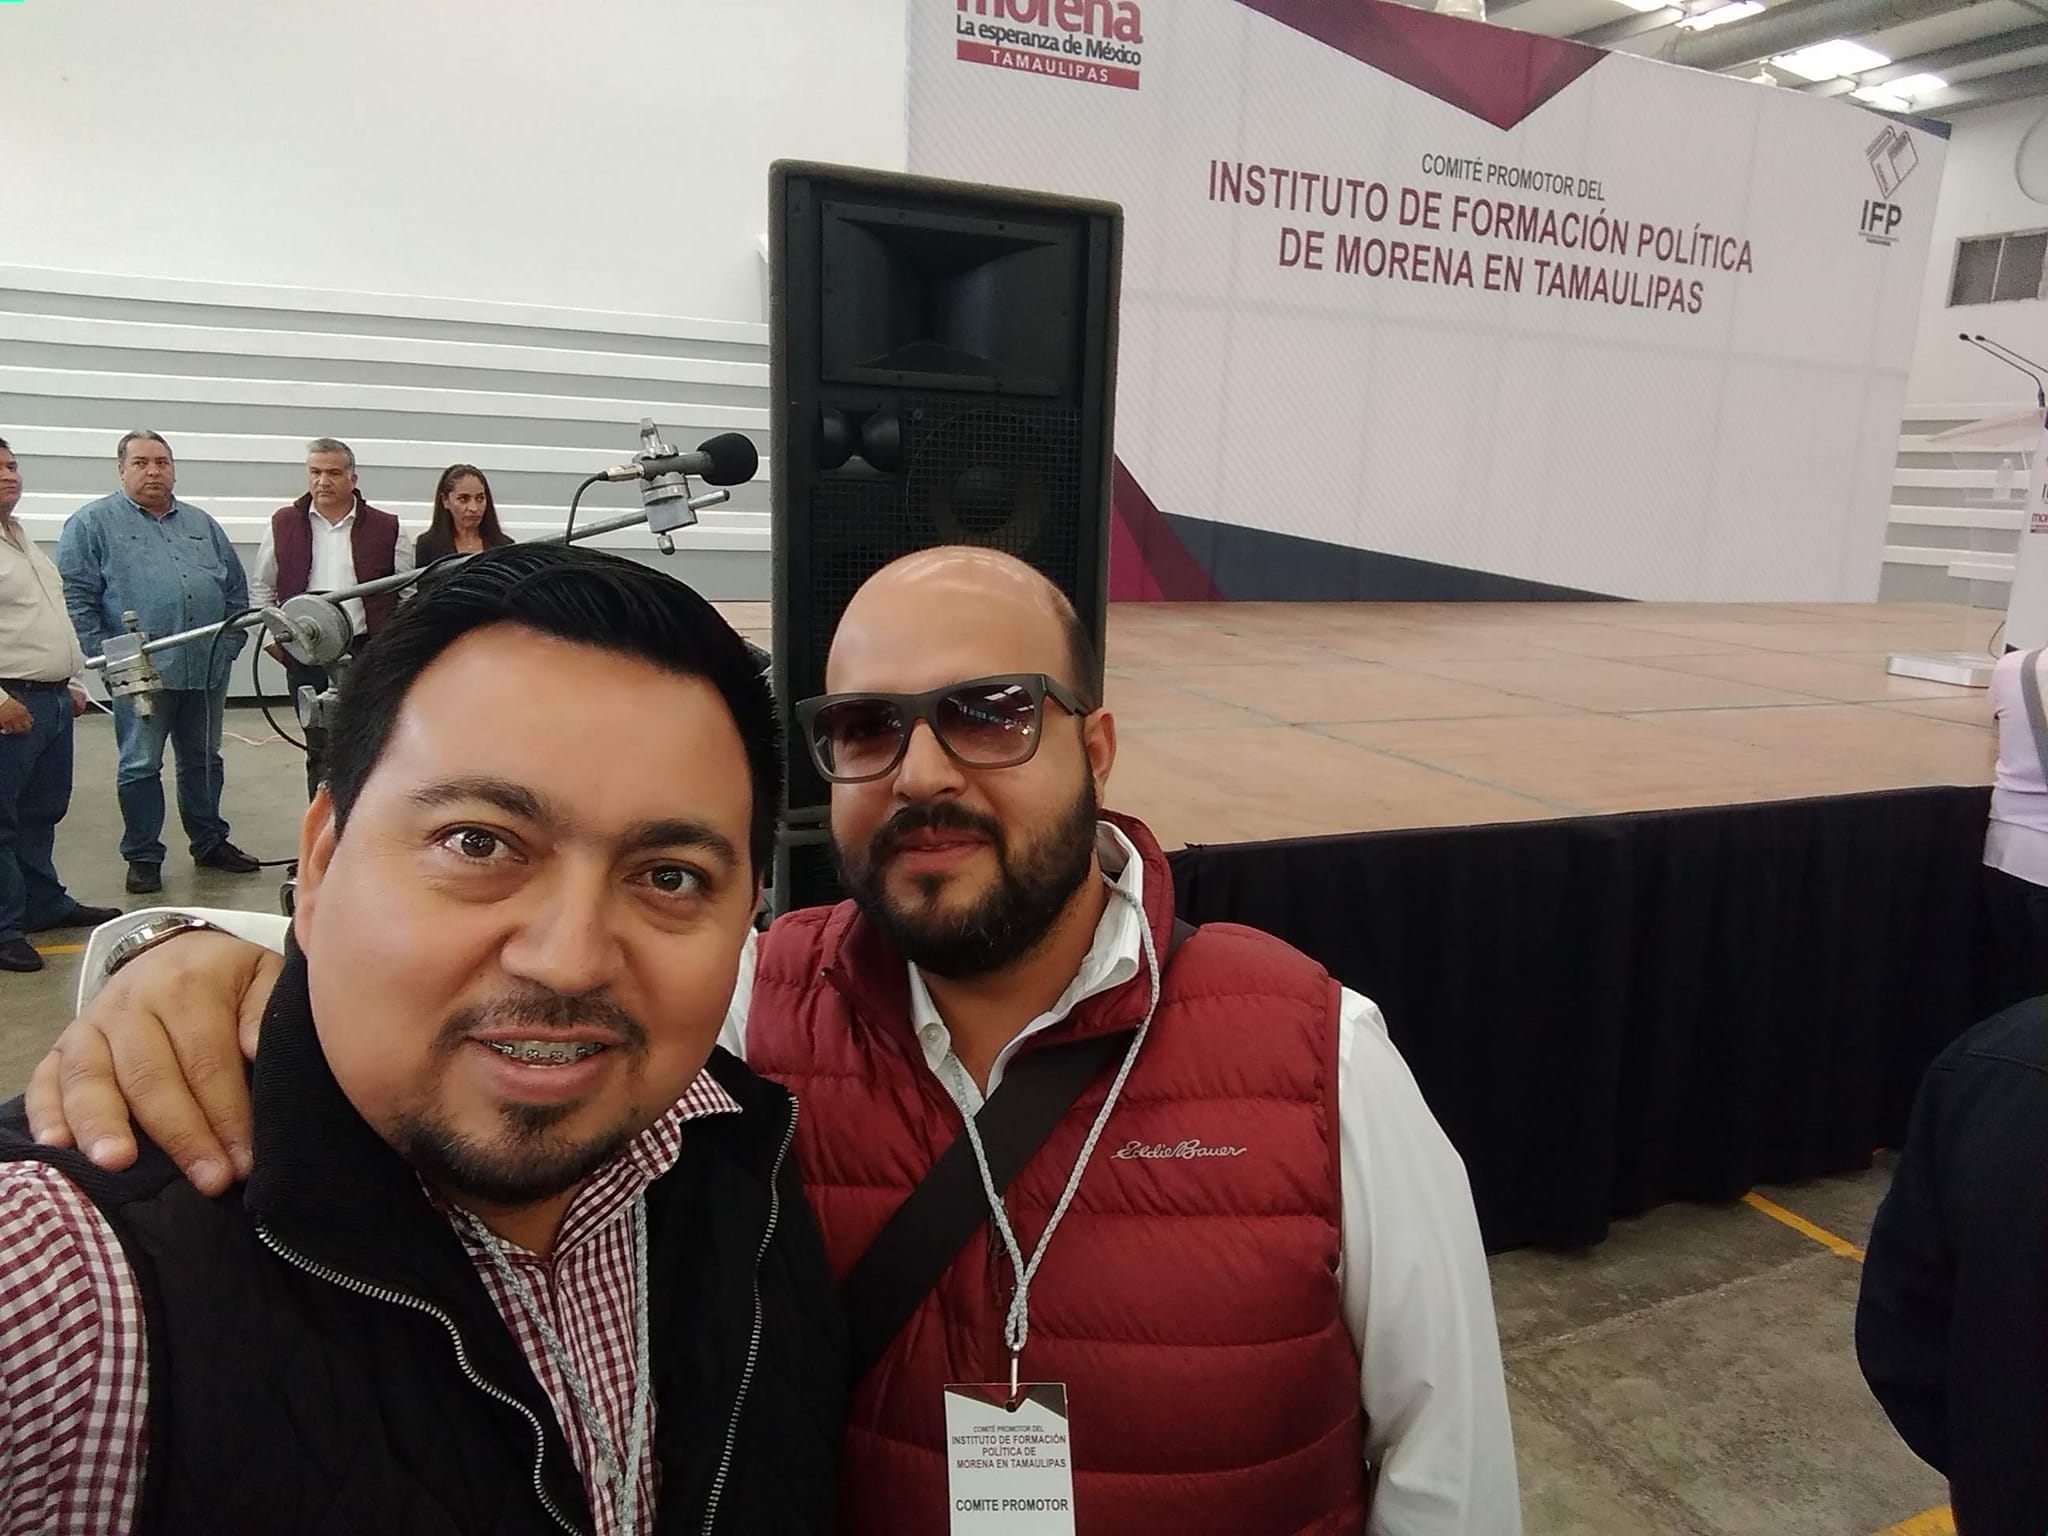 Arriba el Cártel del Golfo!”: supuesto líder de Morena en Tamaulipas fue exhibido en redes - Infobae